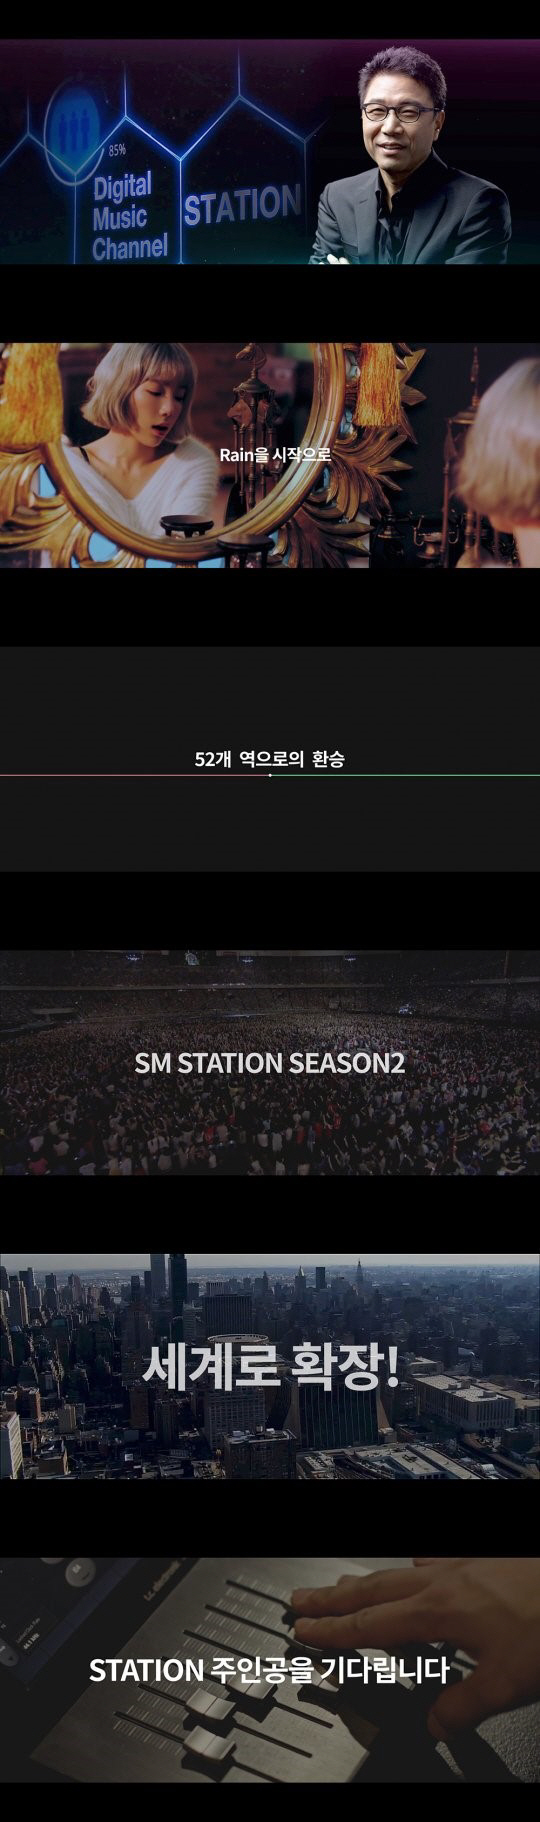 SM 스테이션 시즌2, 시즌1보다 풍성해진 콘텐츠로 돌아온다 ‘기대감 UP’